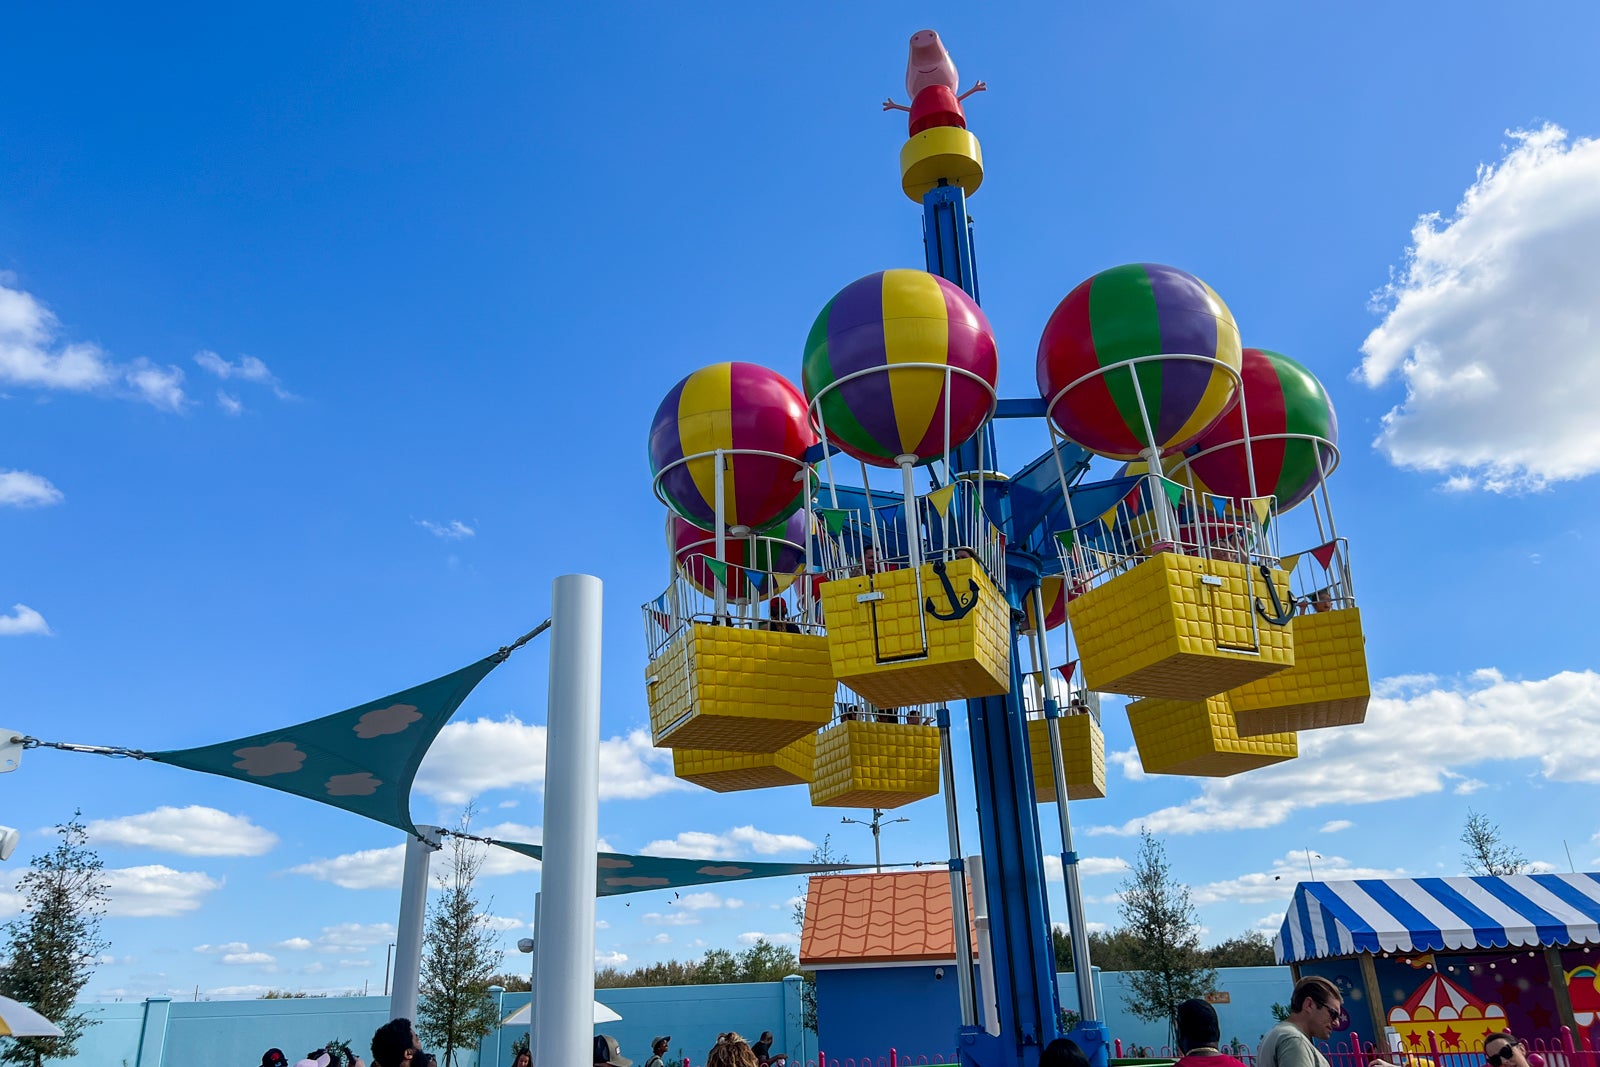 Balloon ride at Peppa Pig Theme Park